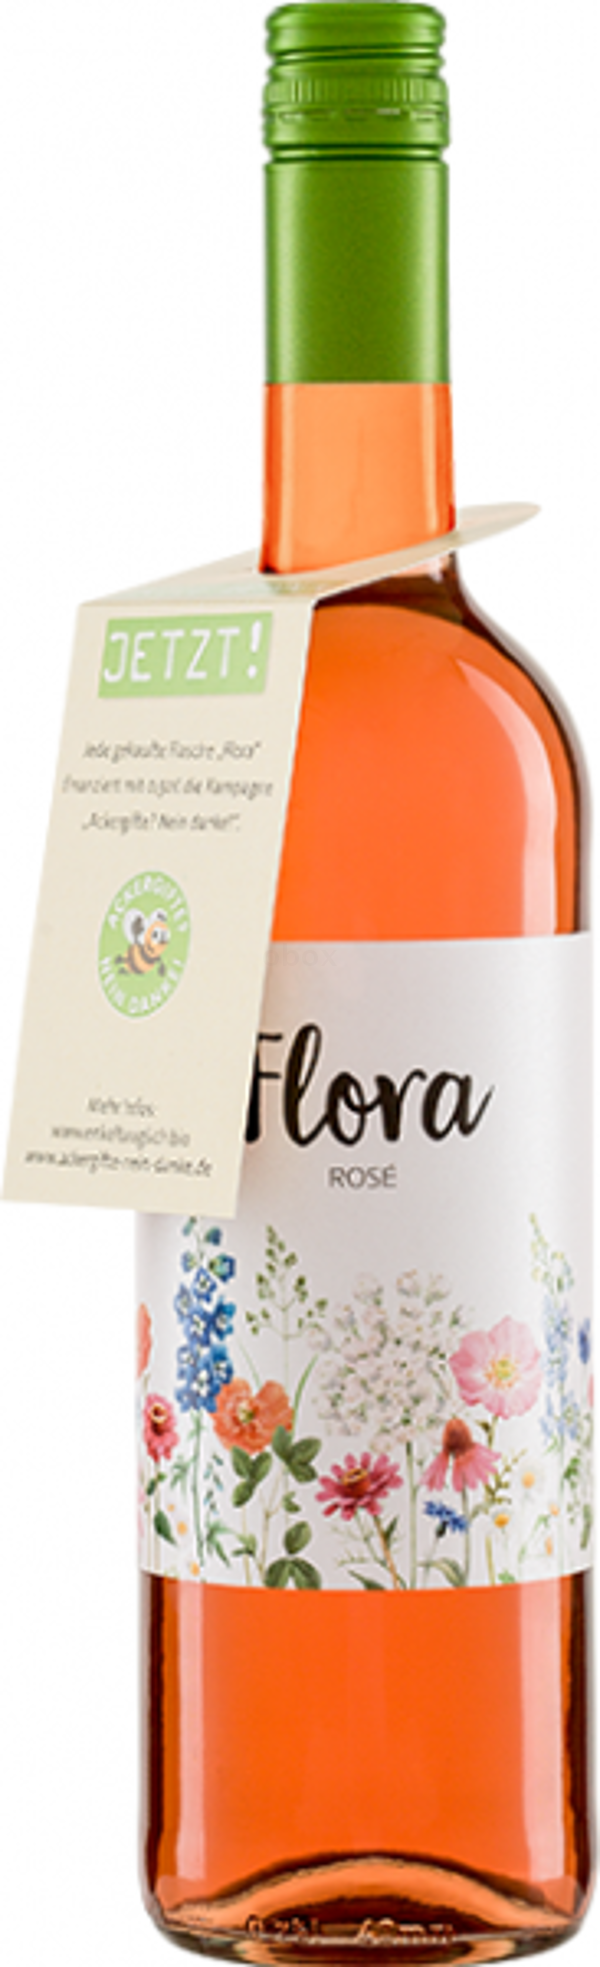 Produktfoto zu Flora Rosé, 0,75 l